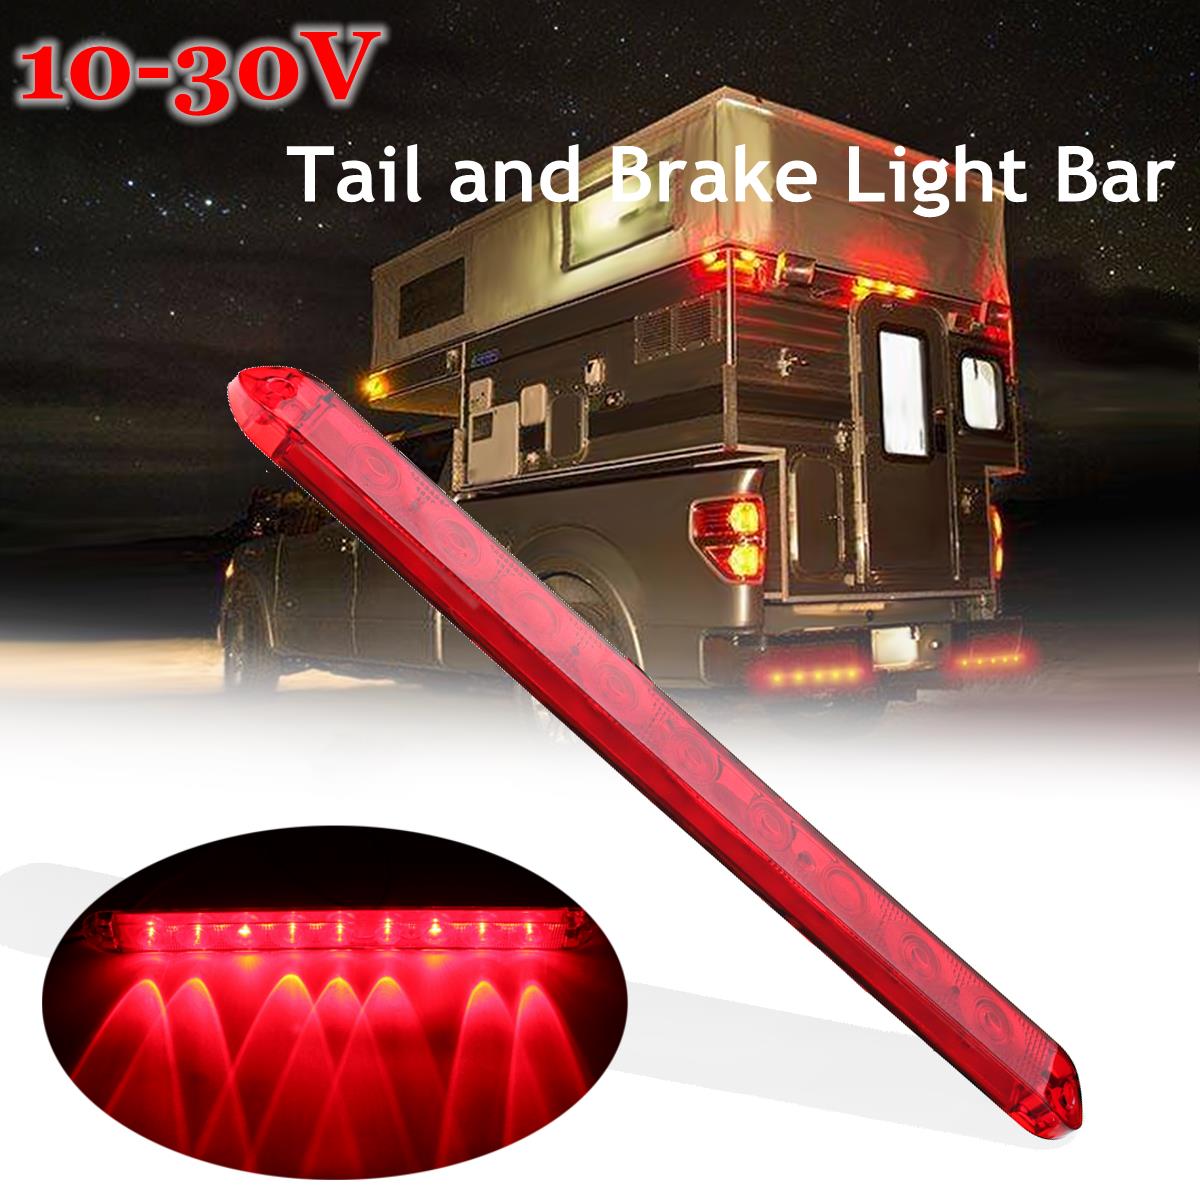 10-30V-9LED-Waterproof-Trailer-Truck-Brake-Light-Bar-Tail-Turn-Stop-Light-for-Utes-Caravans-Buses-1269269